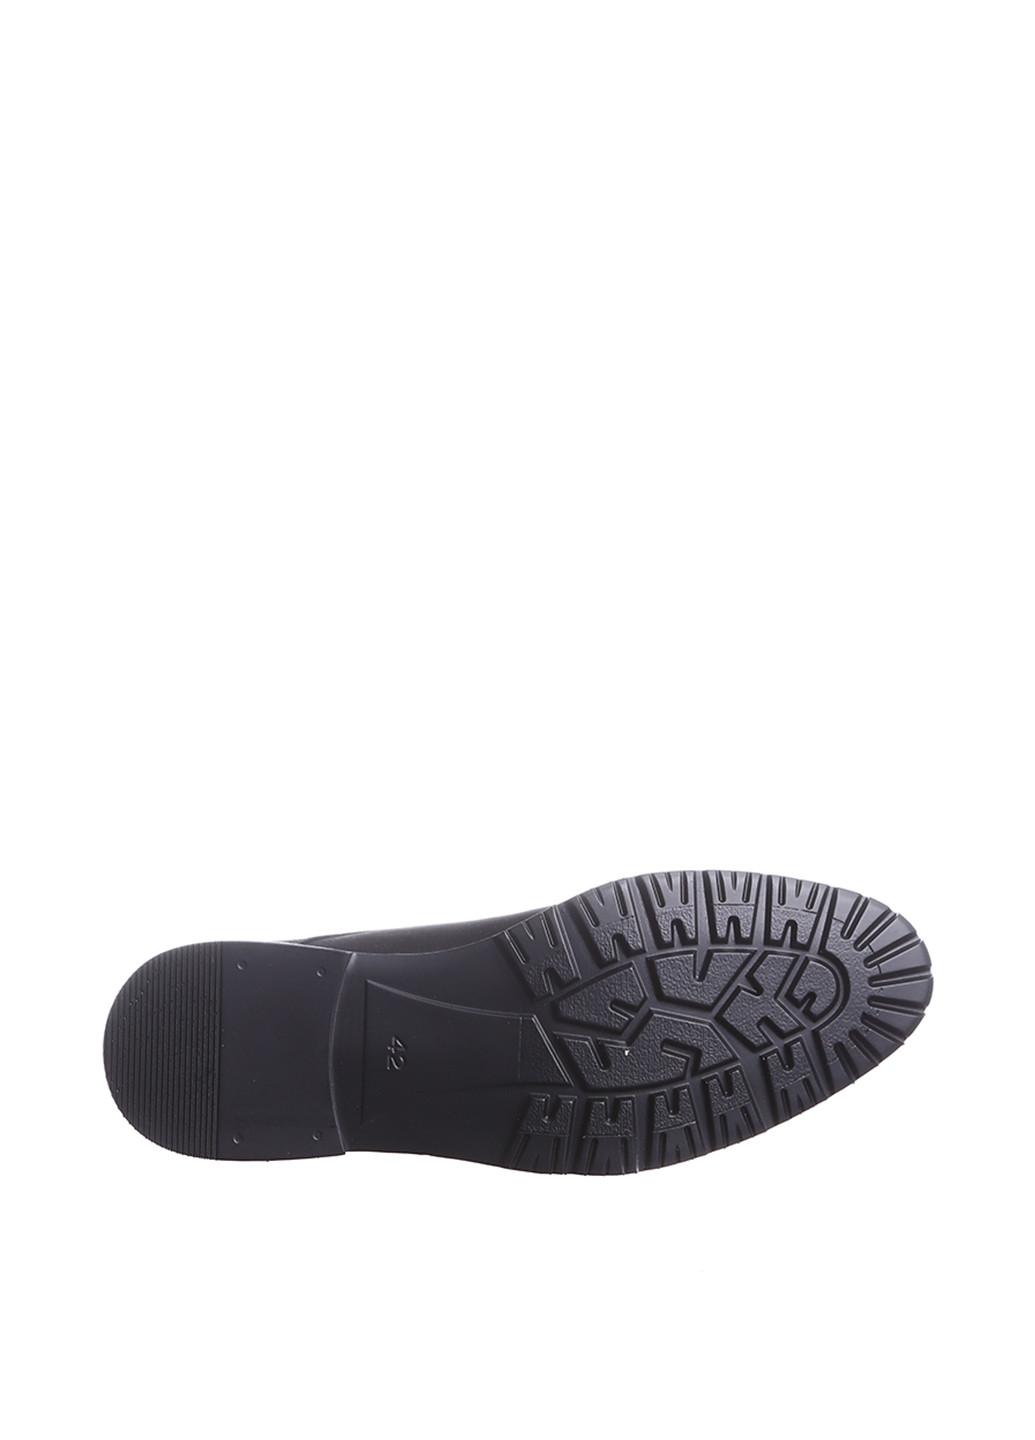 Черные кэжуал туфли Alvito с ремешком